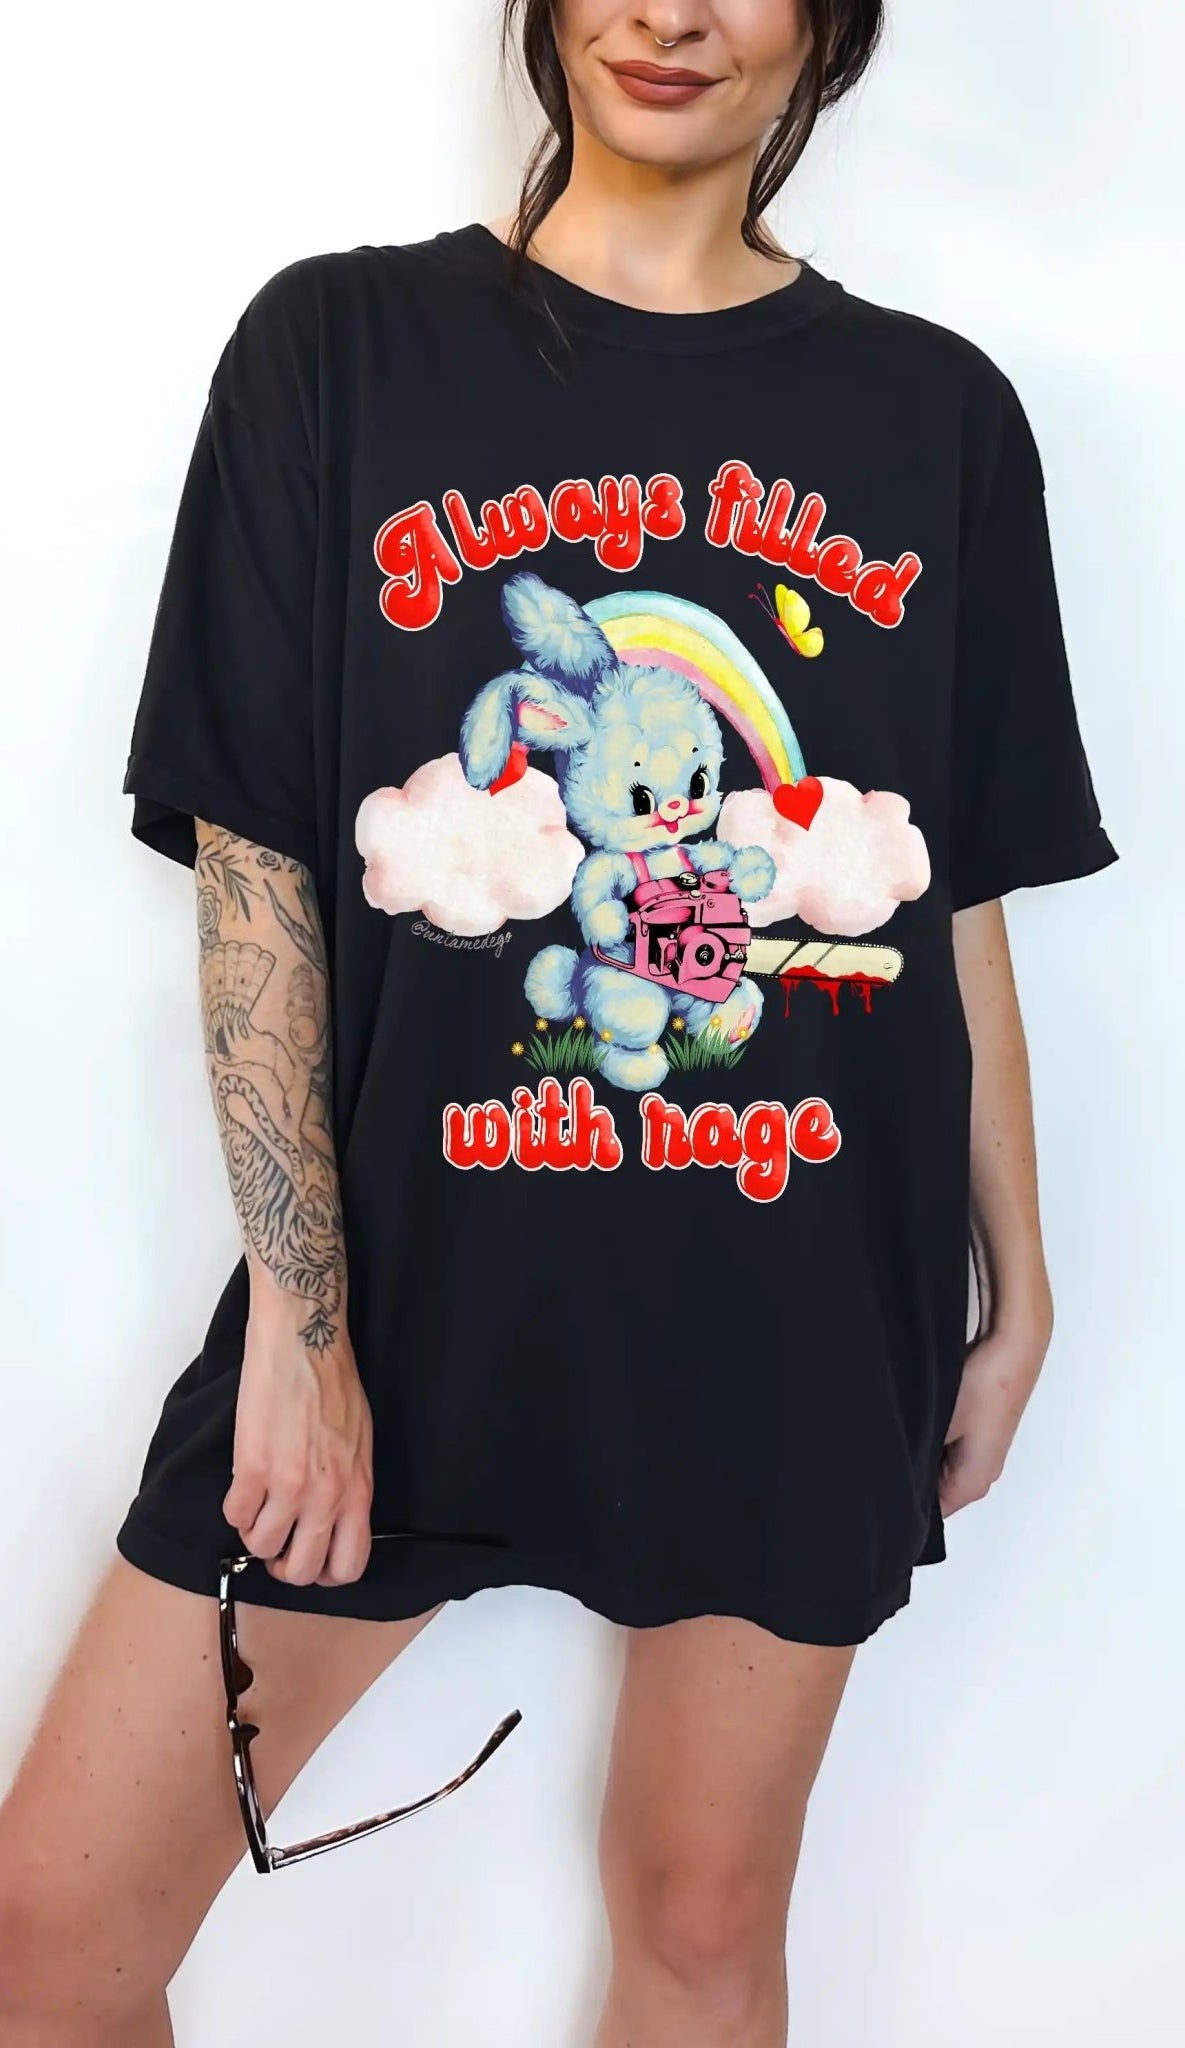 Always Filled With Rage Bunny Tee - UntamedEgo LLC.